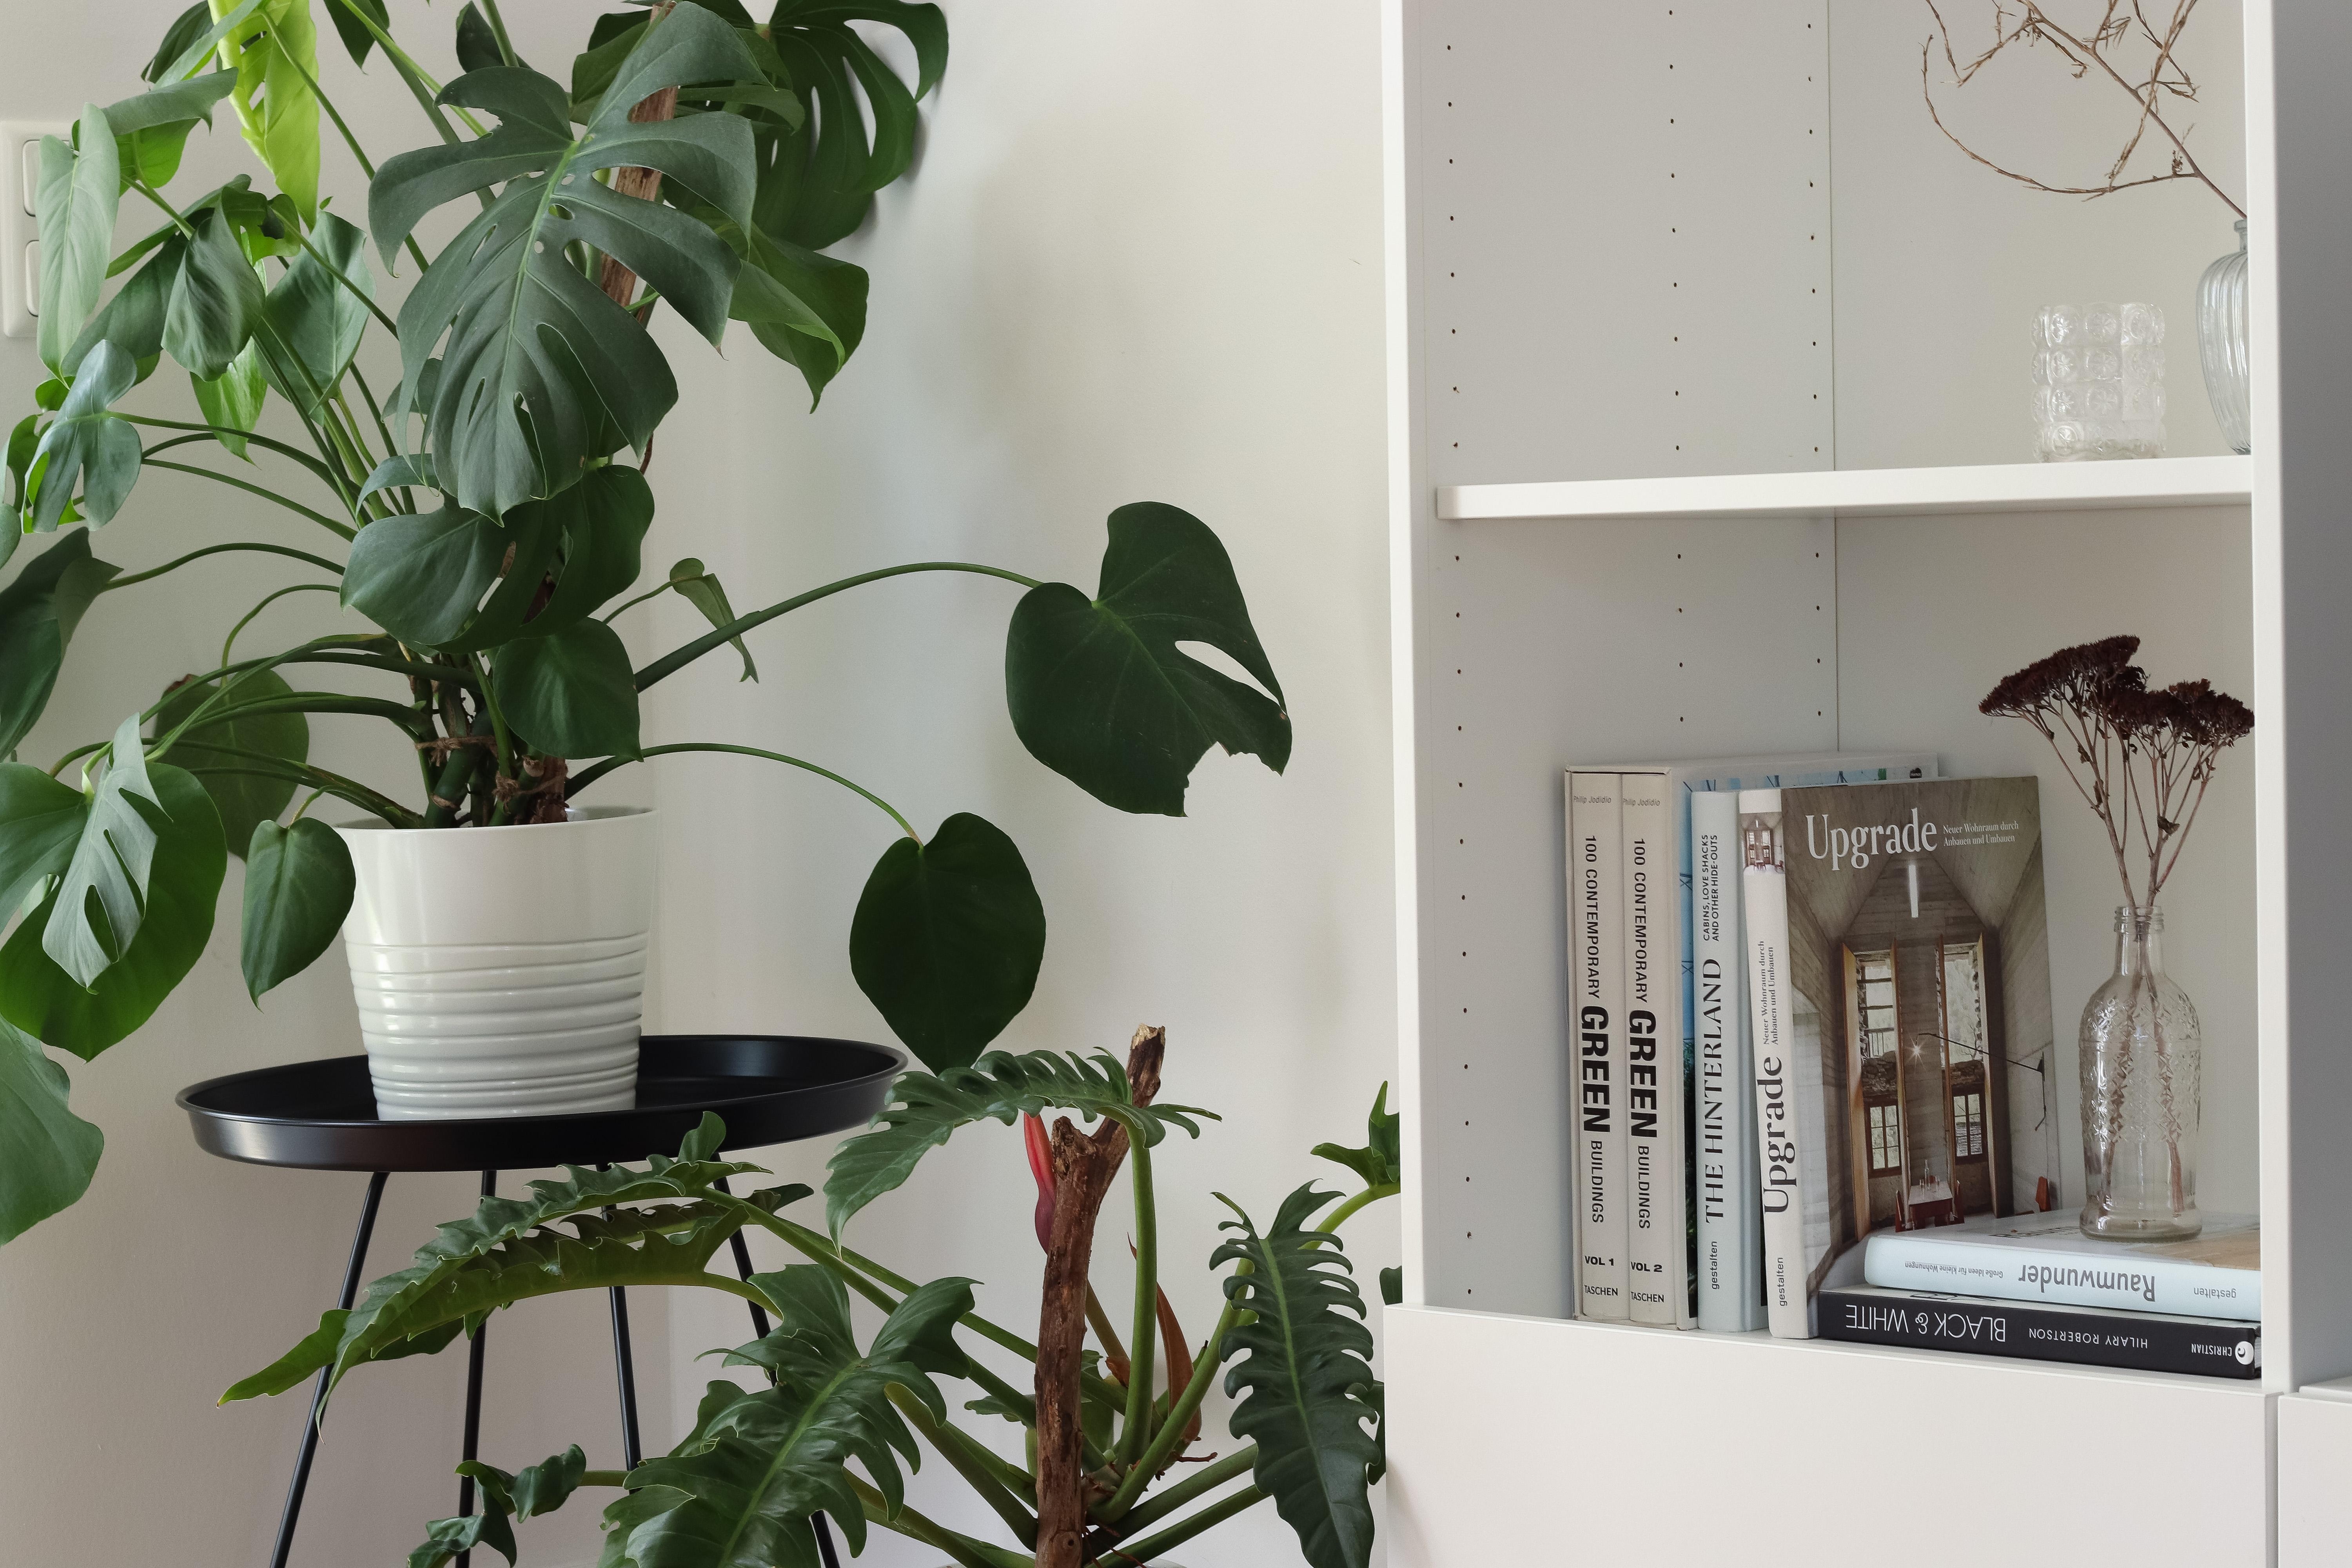 #Pflanzenliebe
#shelfie #shelf #urbanjungle  #interior #deko #minimalistisch #einrichtungsbücher #nachhaltig